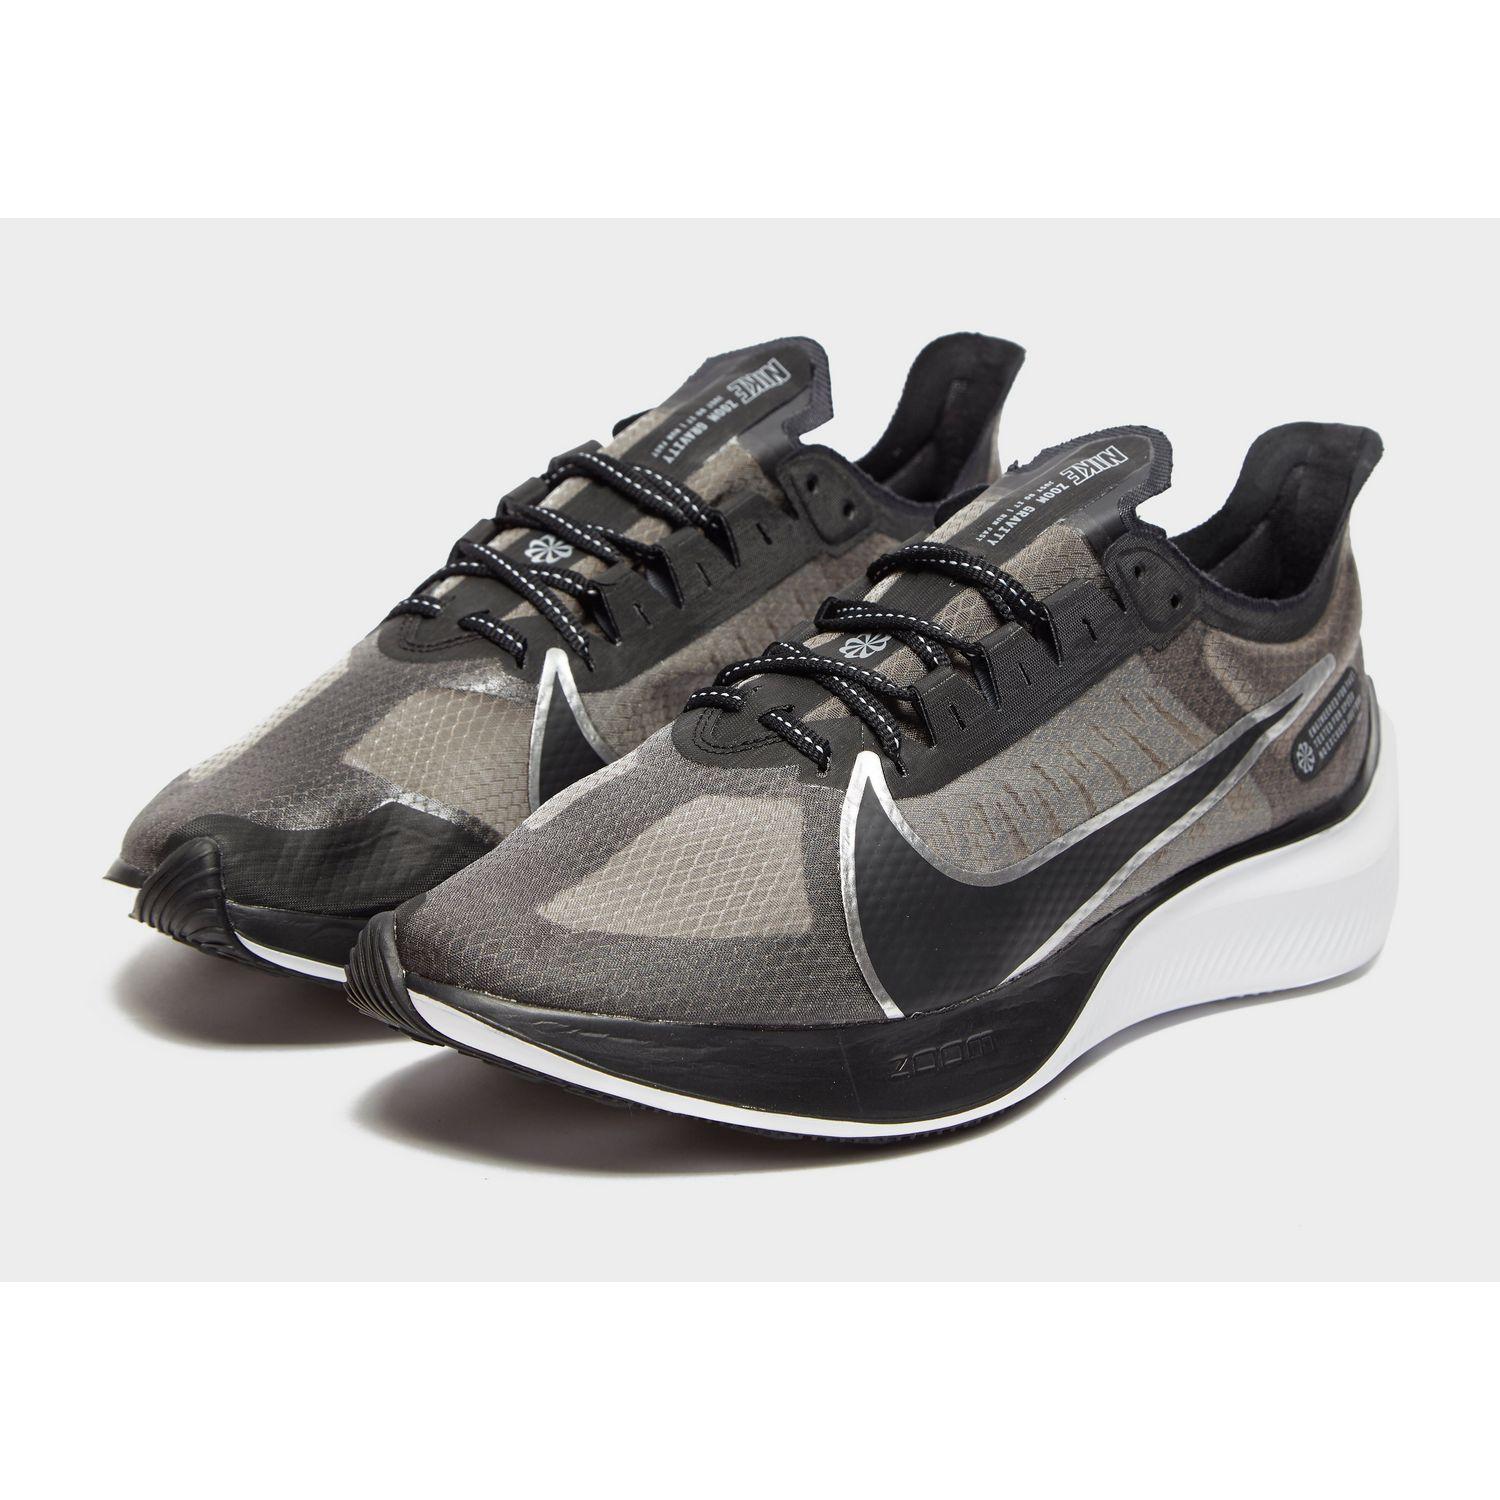 Nike Zoom Gravity in Black/Grey/White (Black) for Men - Lyst